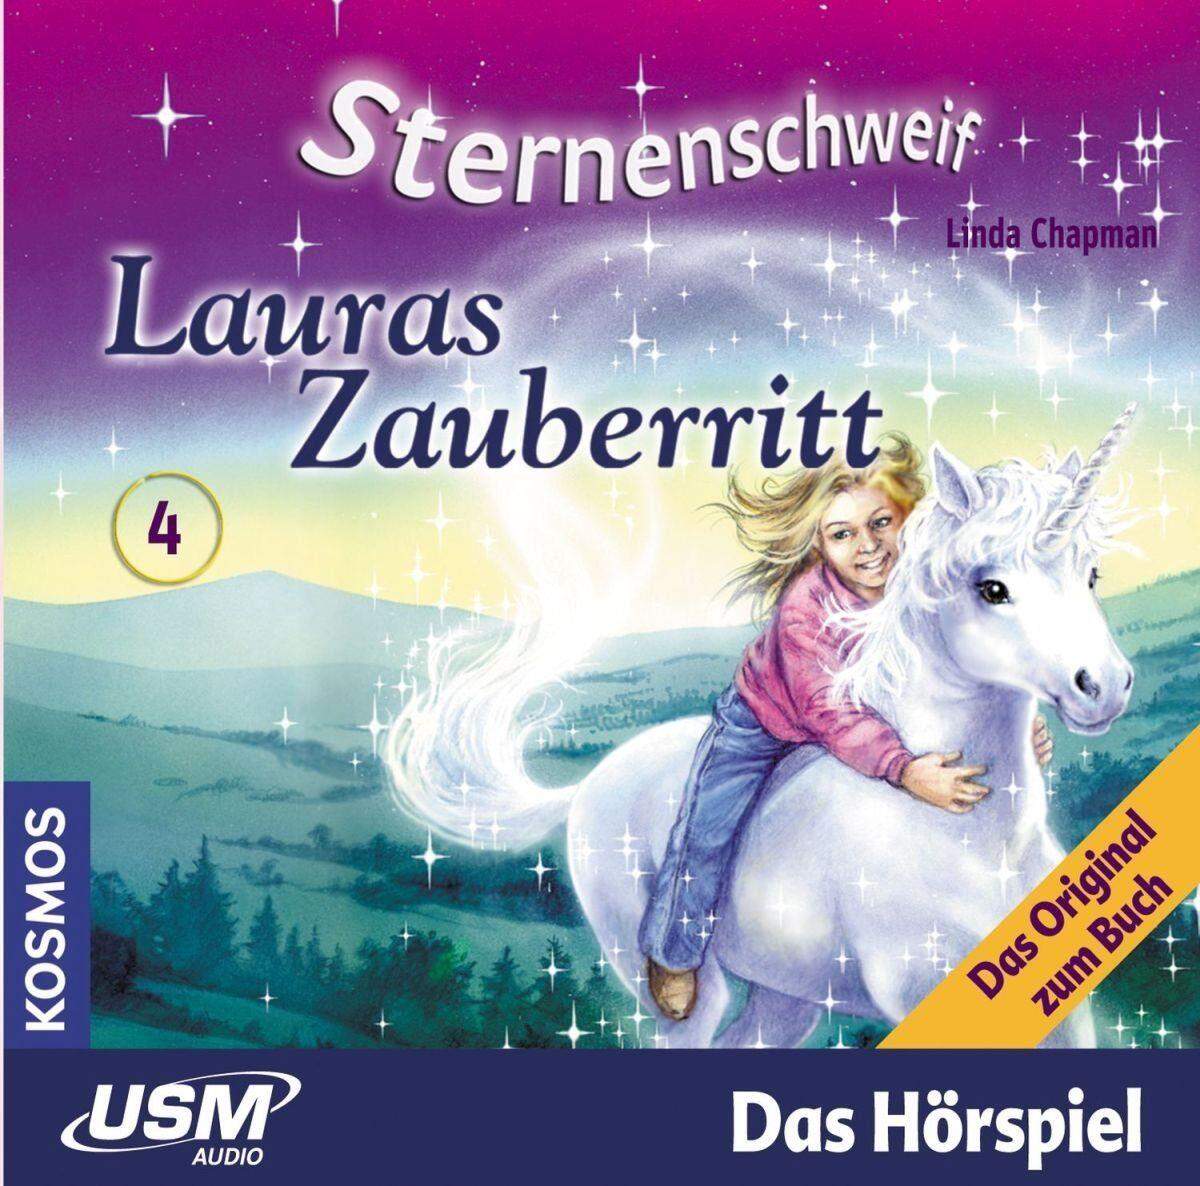 KOSMOS Hörspiel-CD Sternenschweif 4 Lauras Zauberritt